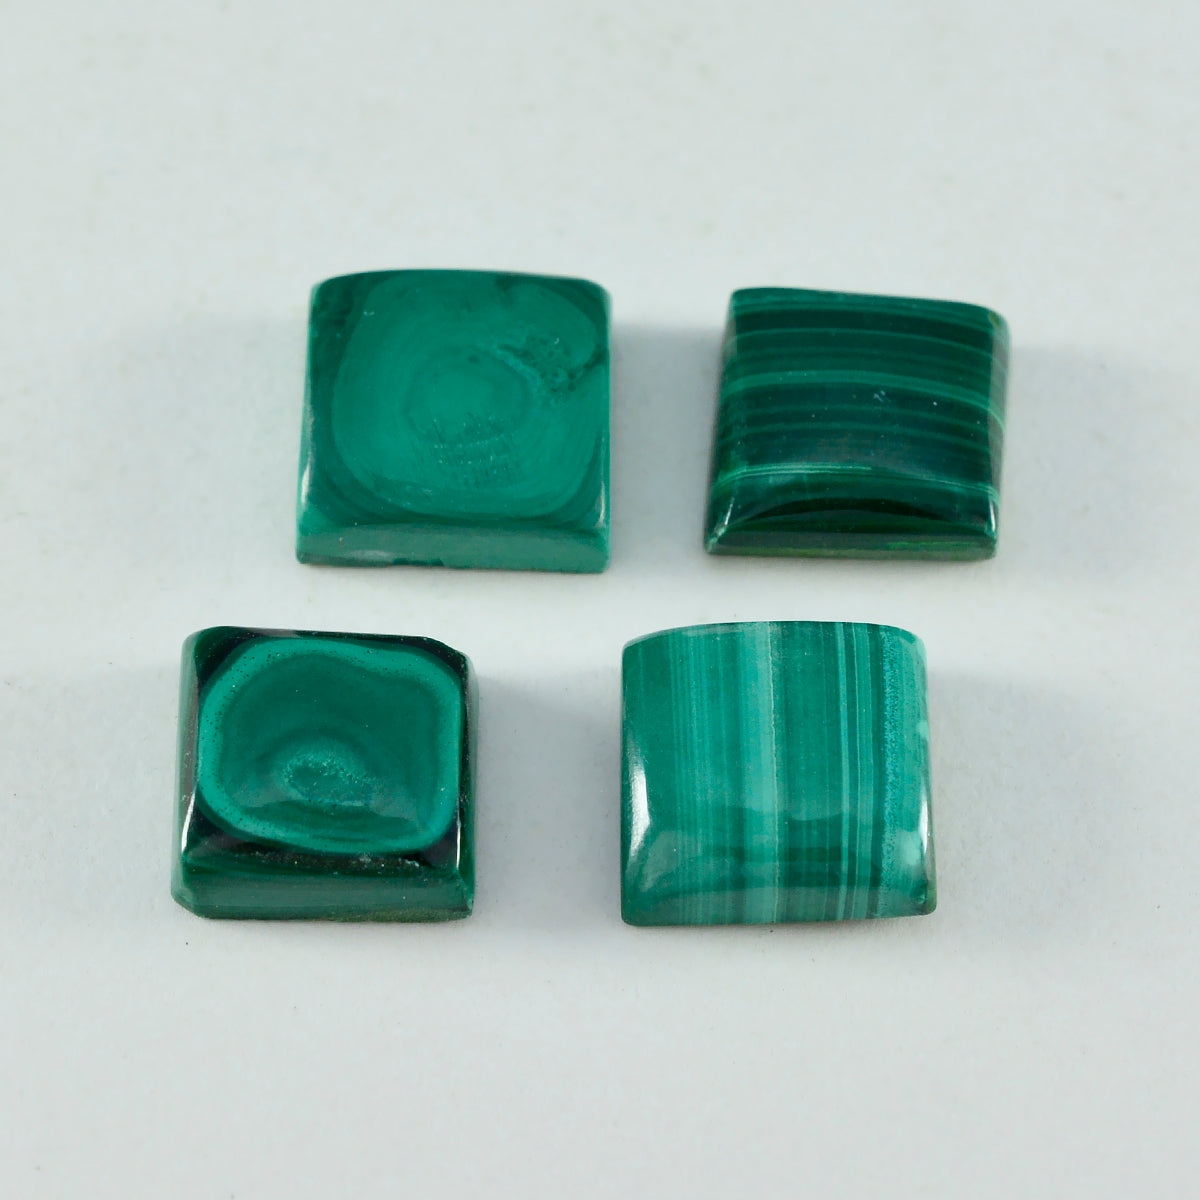 Riyogems 1 Stück grüner Malachit-Cabochon, 9 x 9 mm, quadratische Form, ein hochwertiger Edelstein